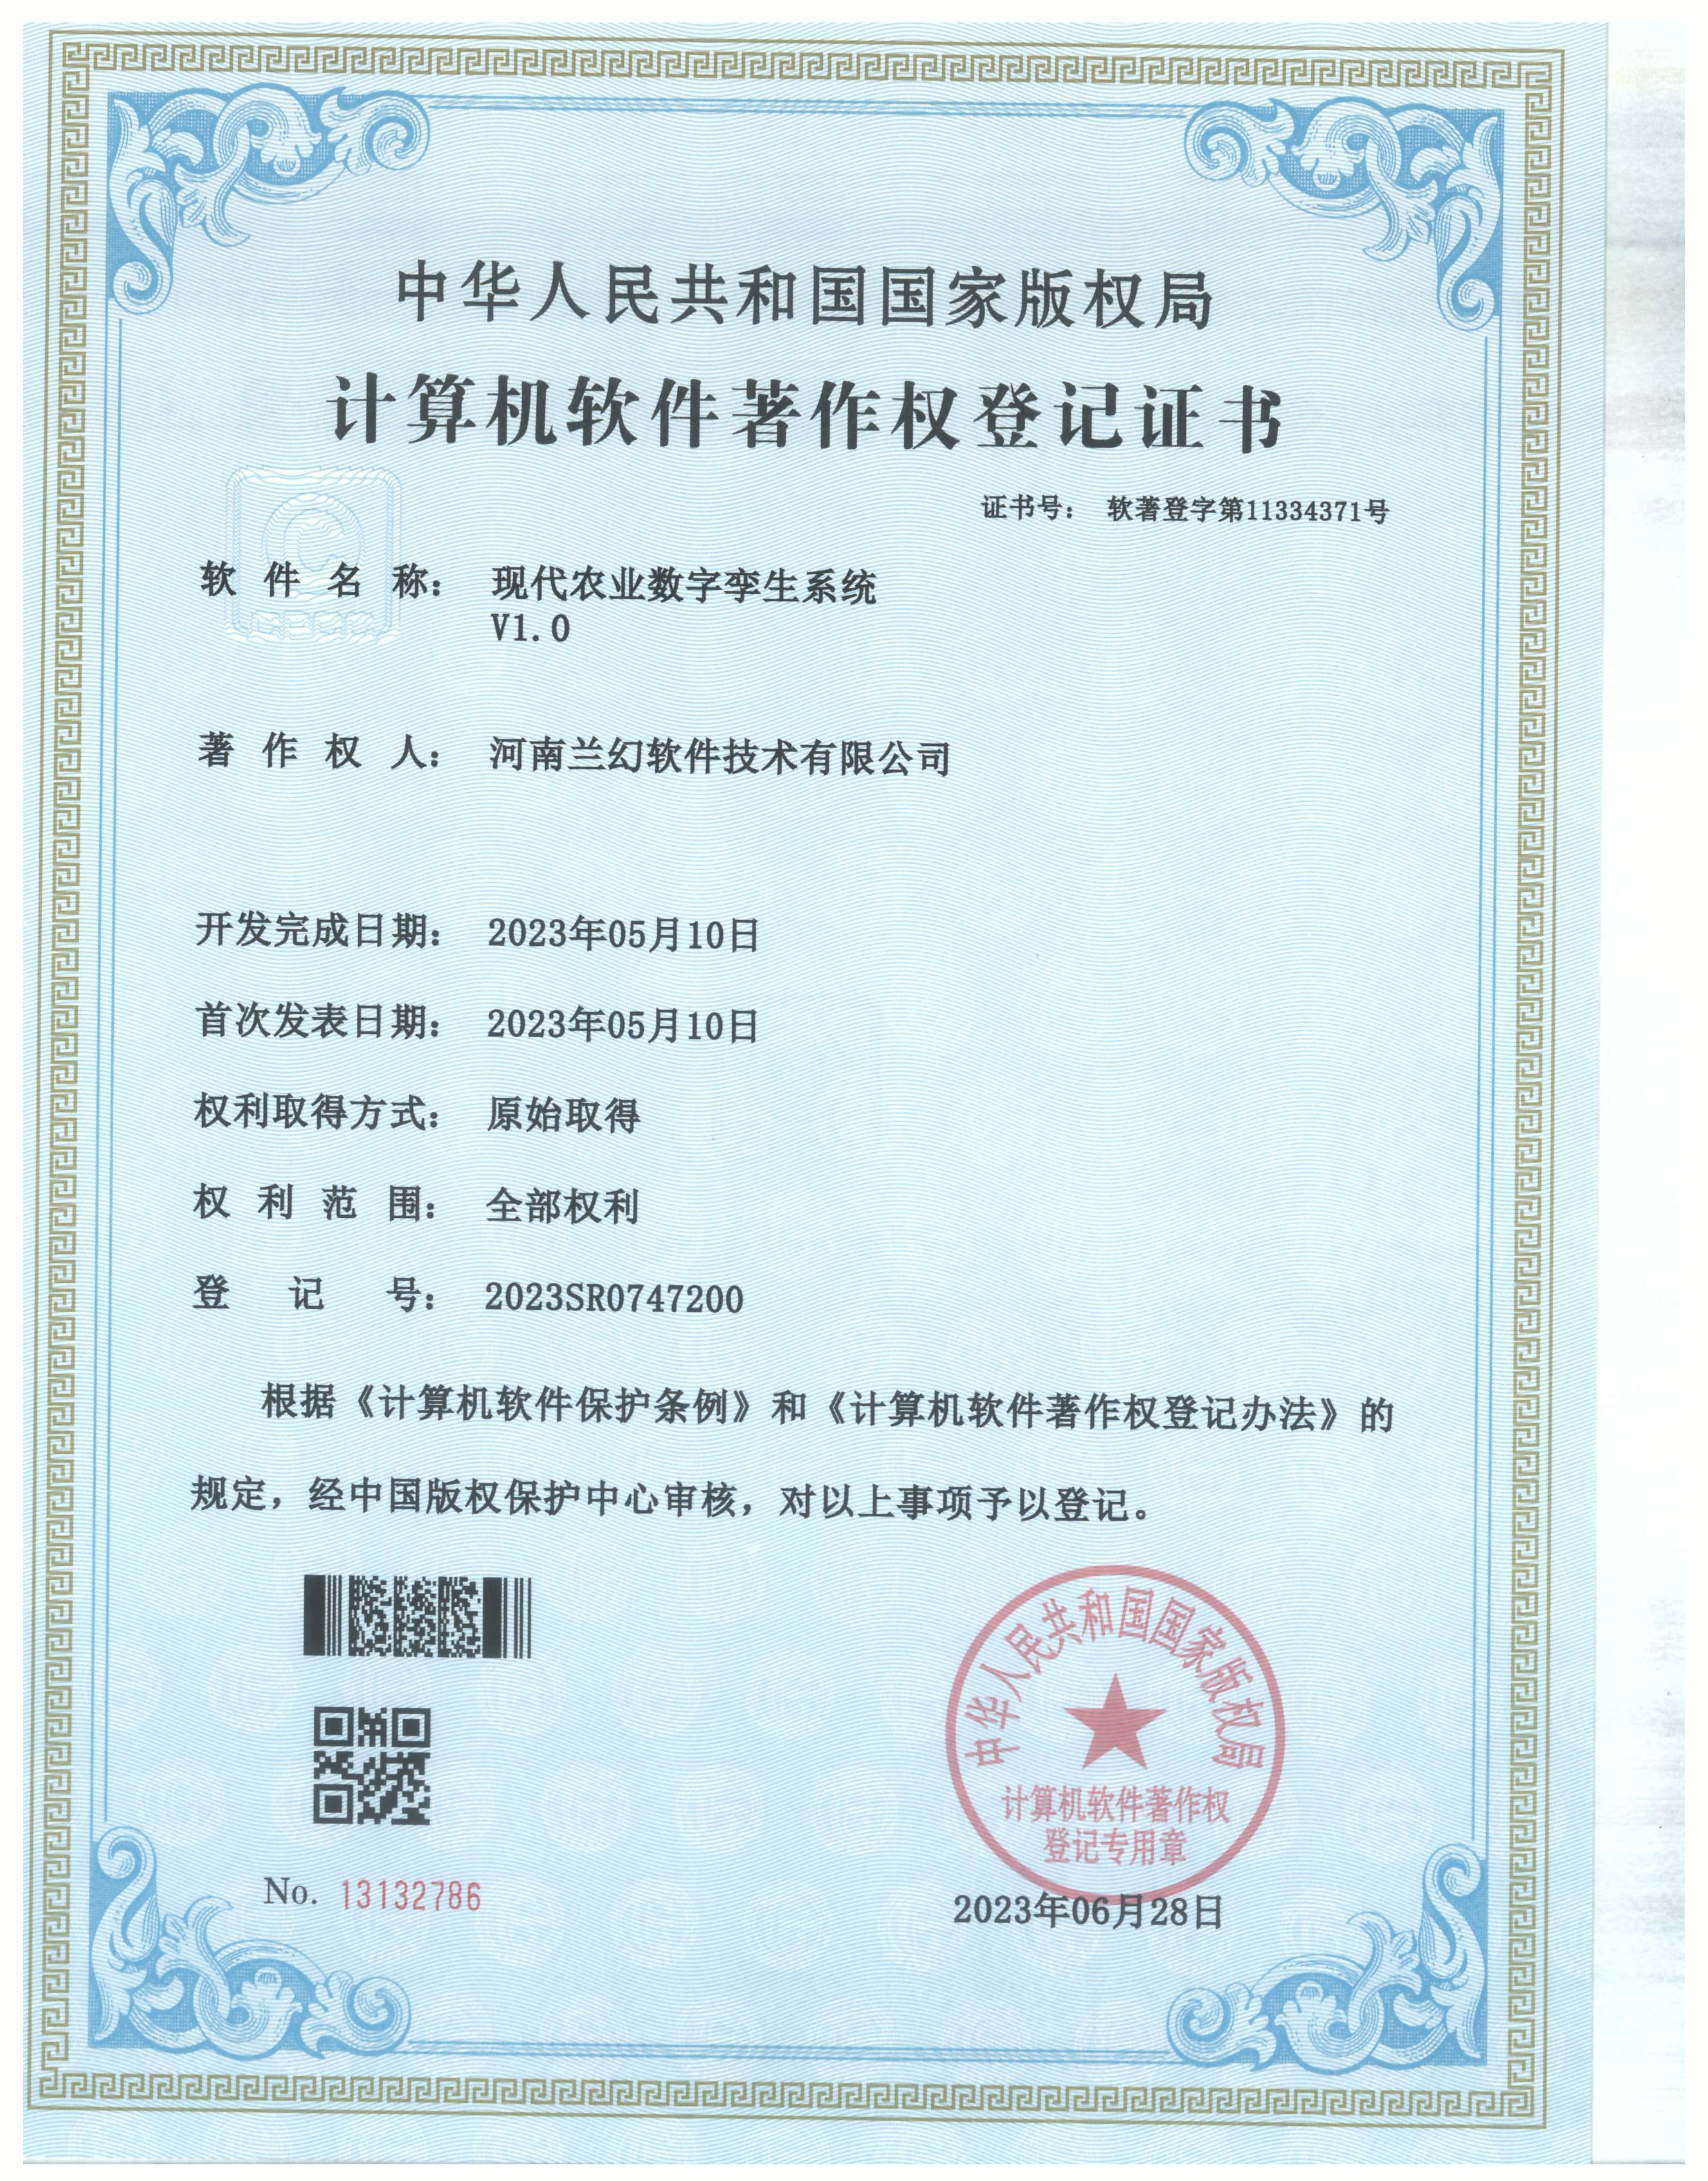 河南兰幻软件技术有限公司软著证书